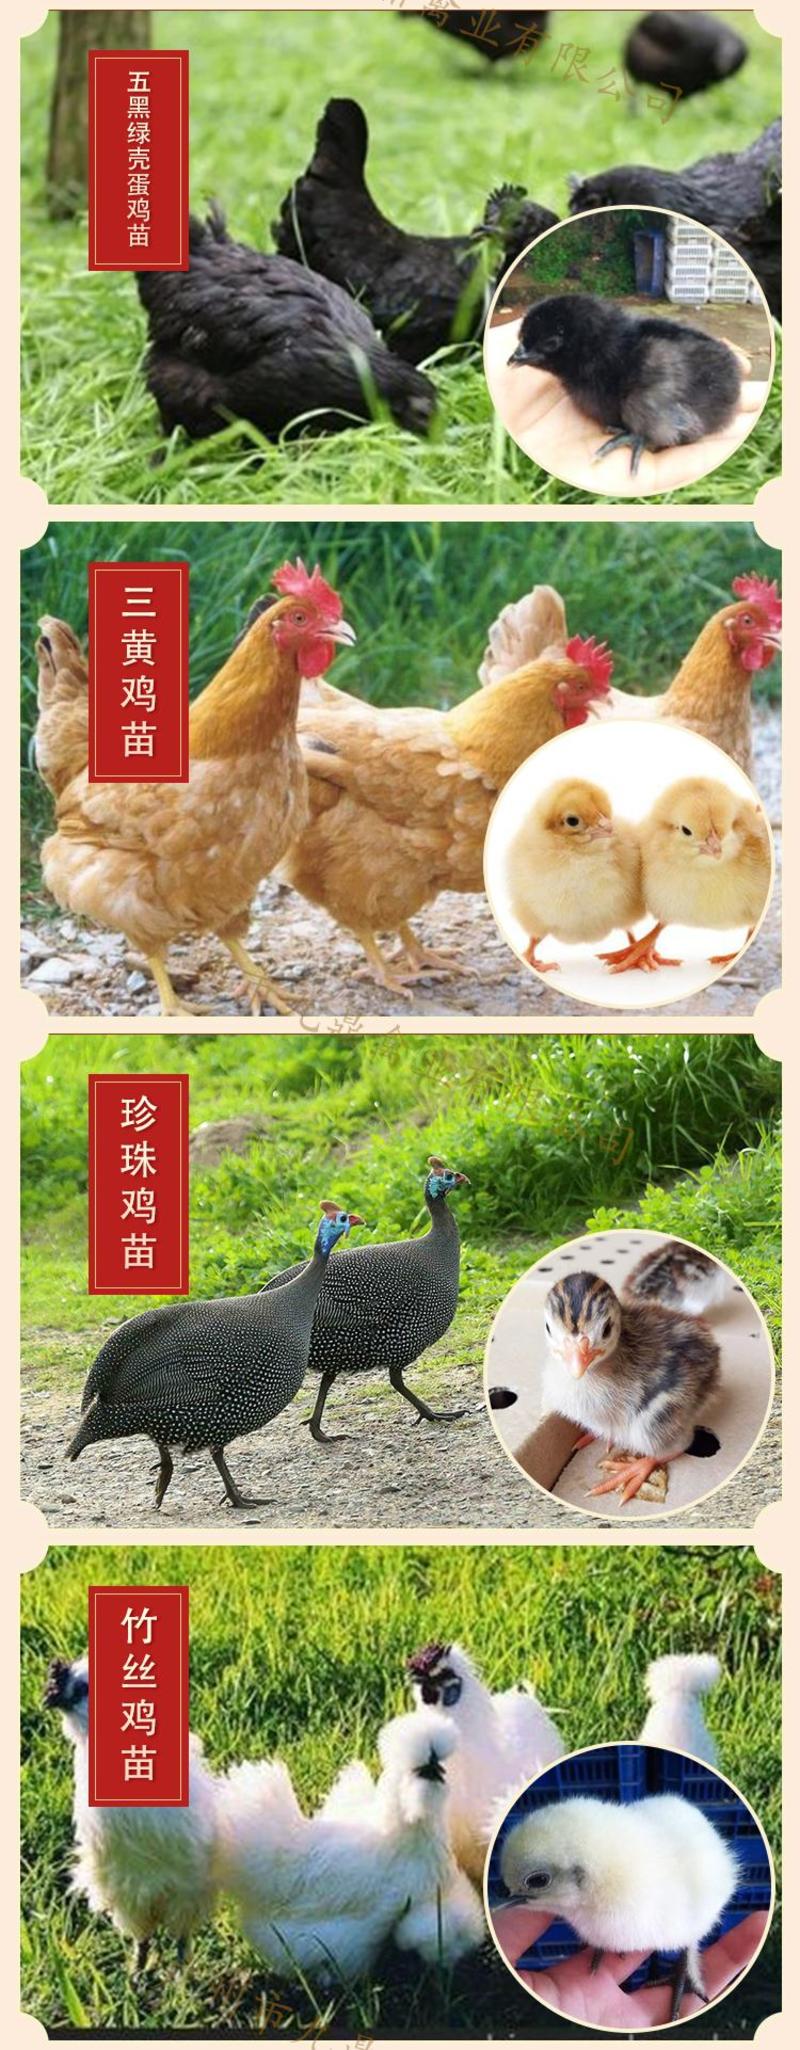 广州孵化场直售越南大脚东涛鸡苗半个月的脱温苗运输包活